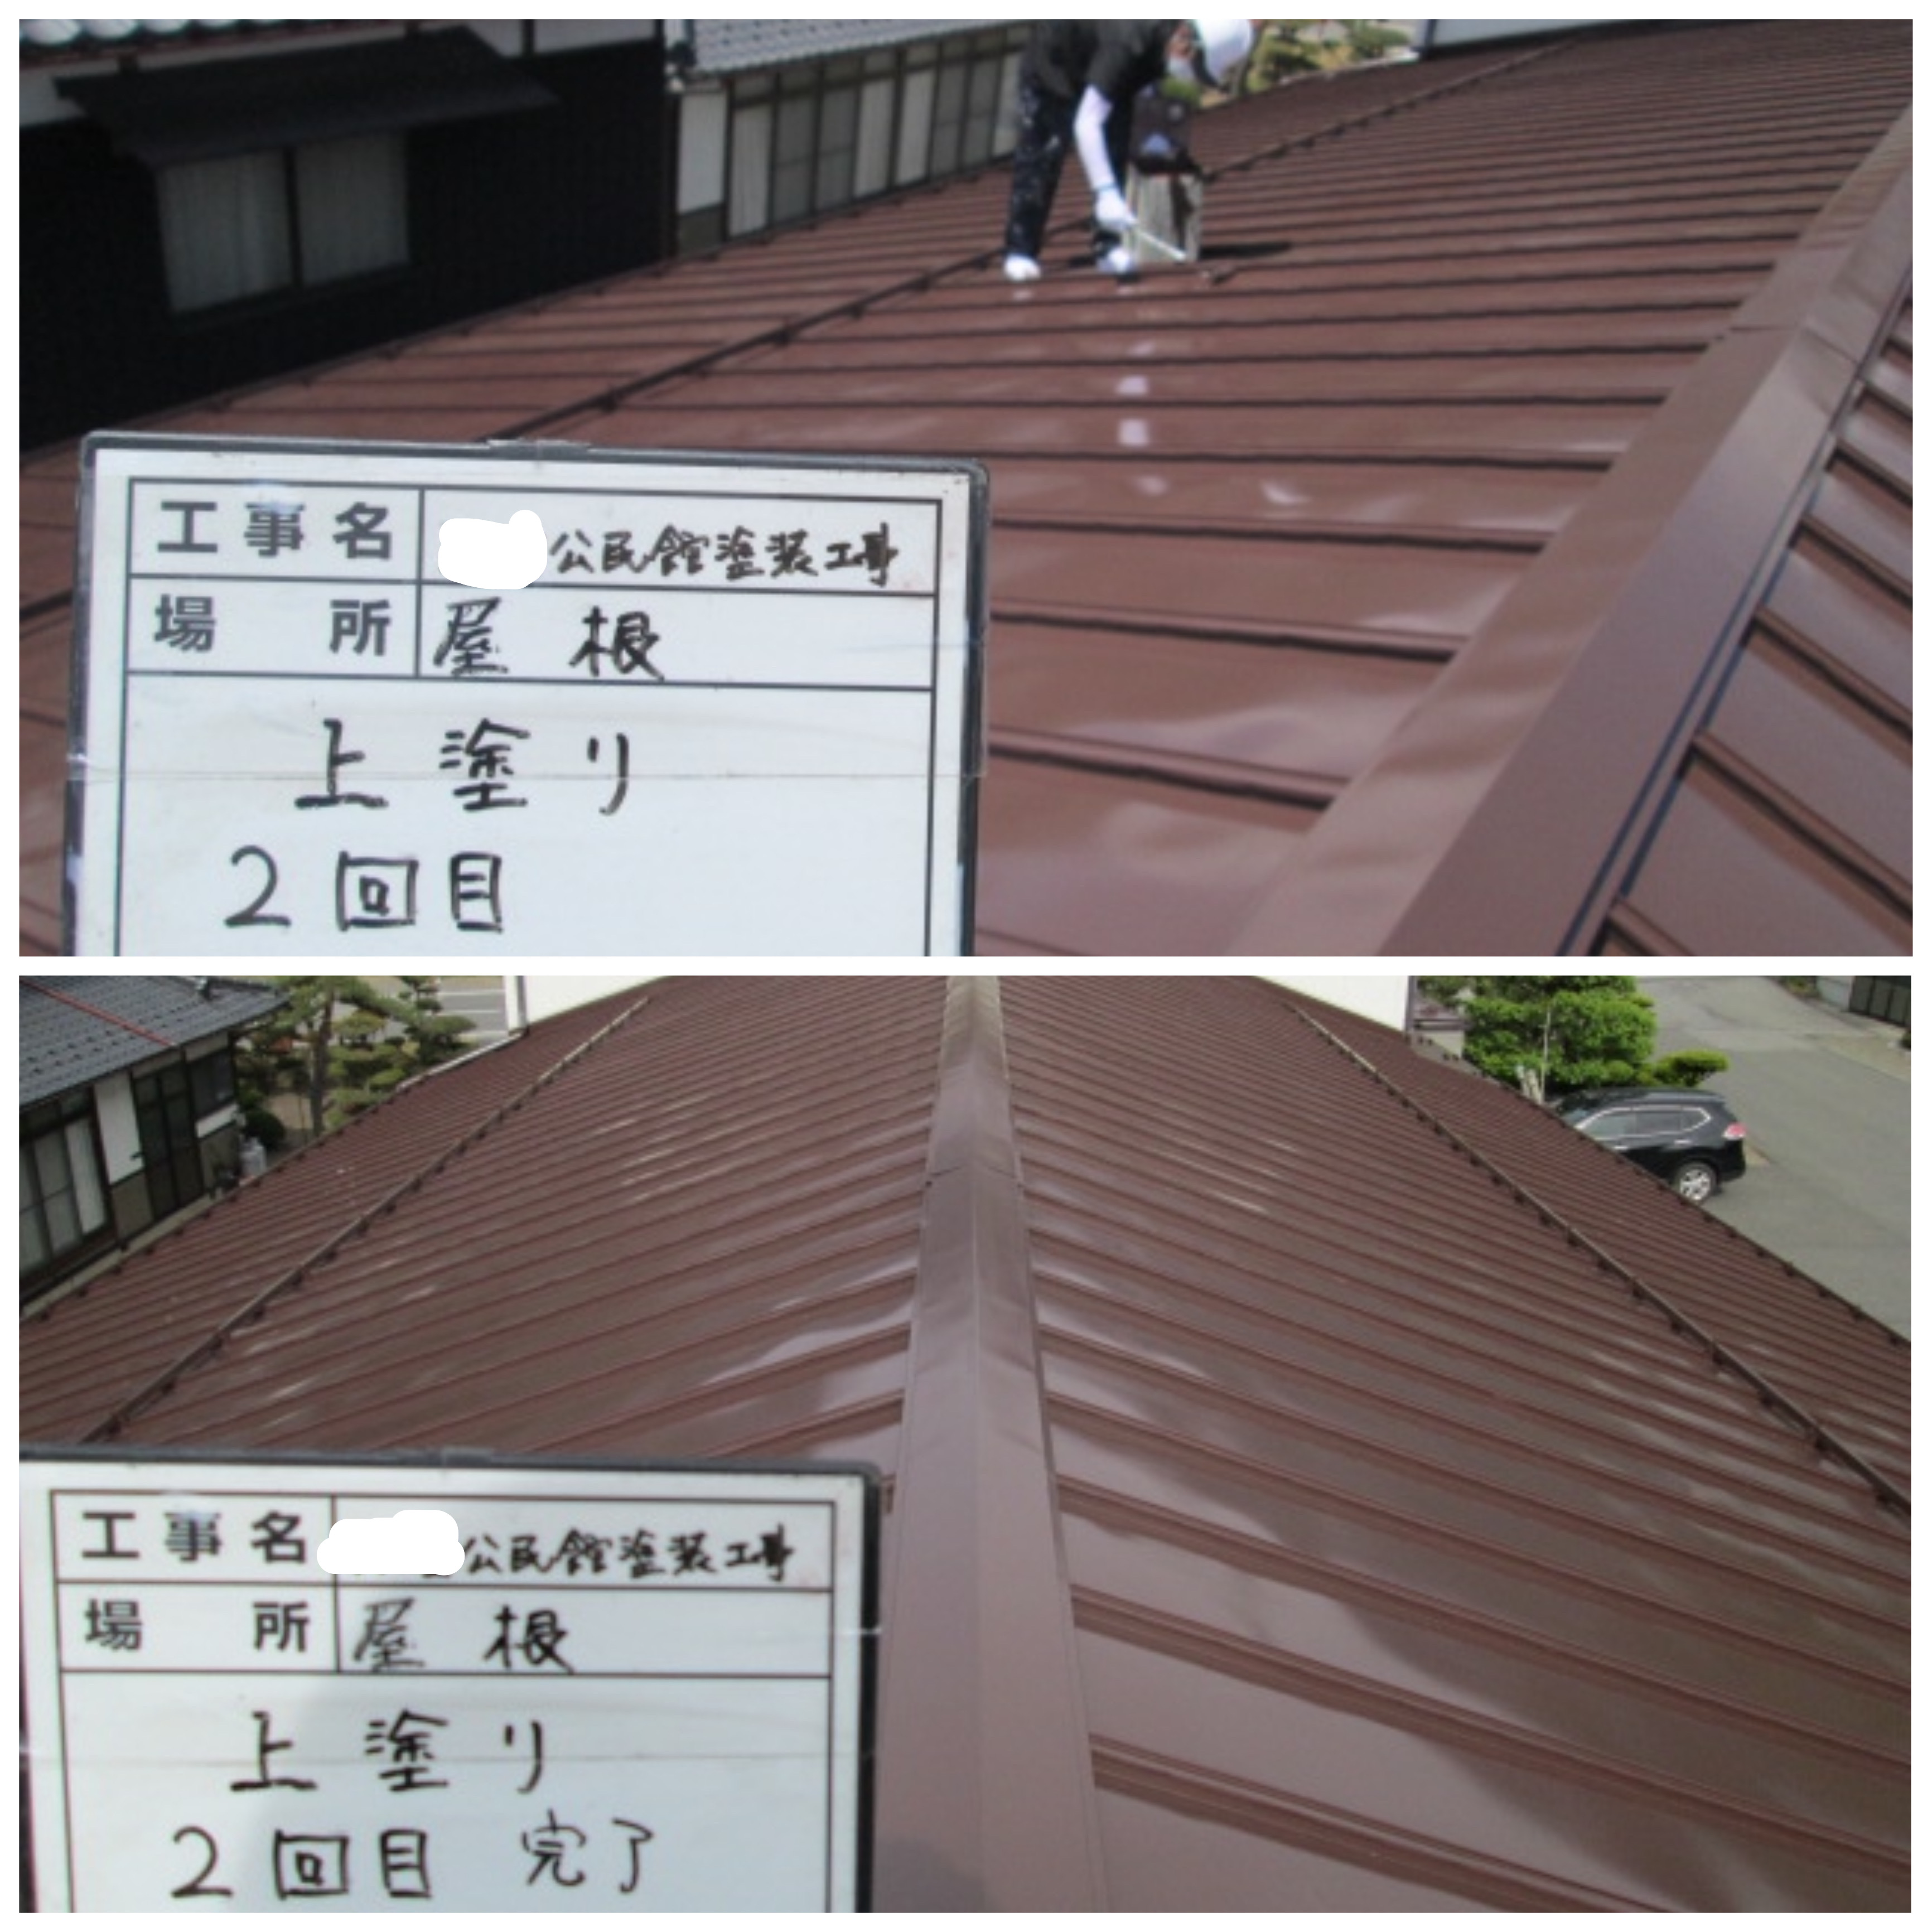 松本市で公民館の屋根の塗り替え工事